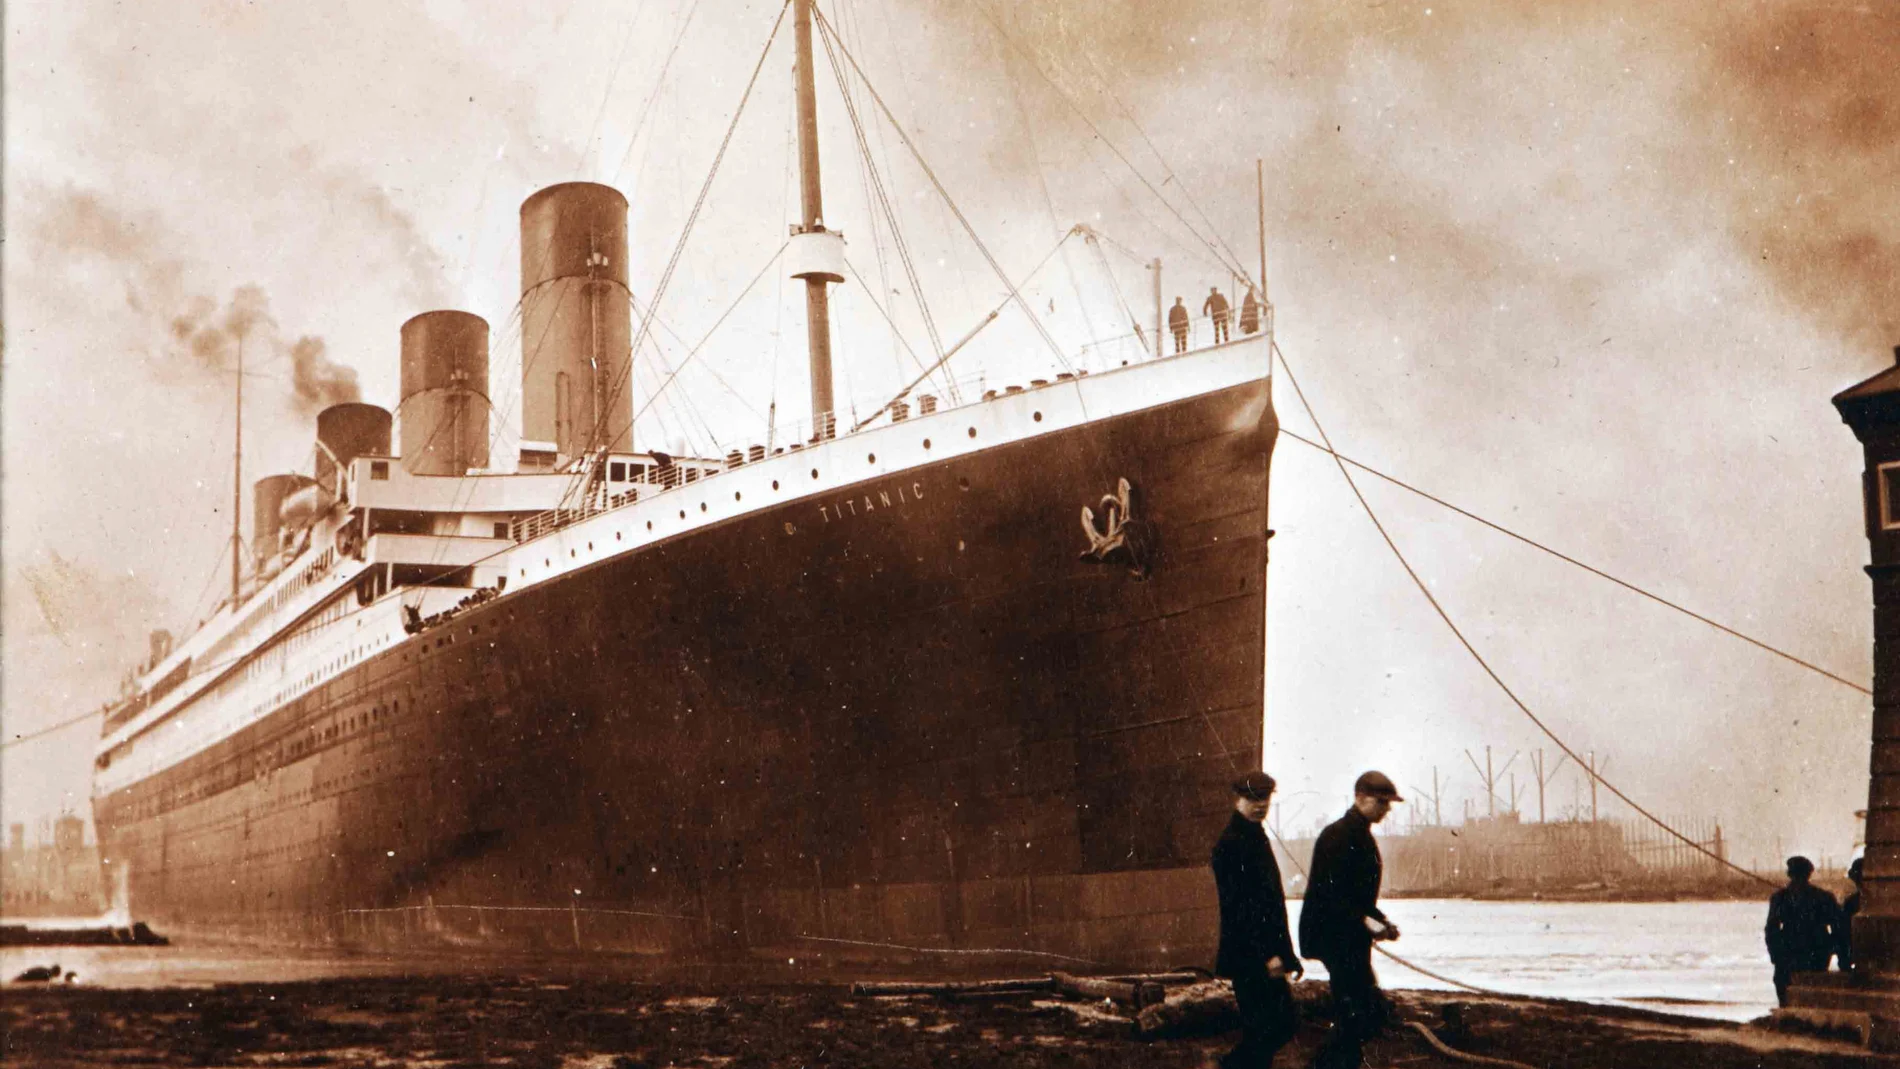 El 10 de abril de 1912 el transatlántico más lujoso de los construidos zarpaba con 2.224 pasajeros a bordo